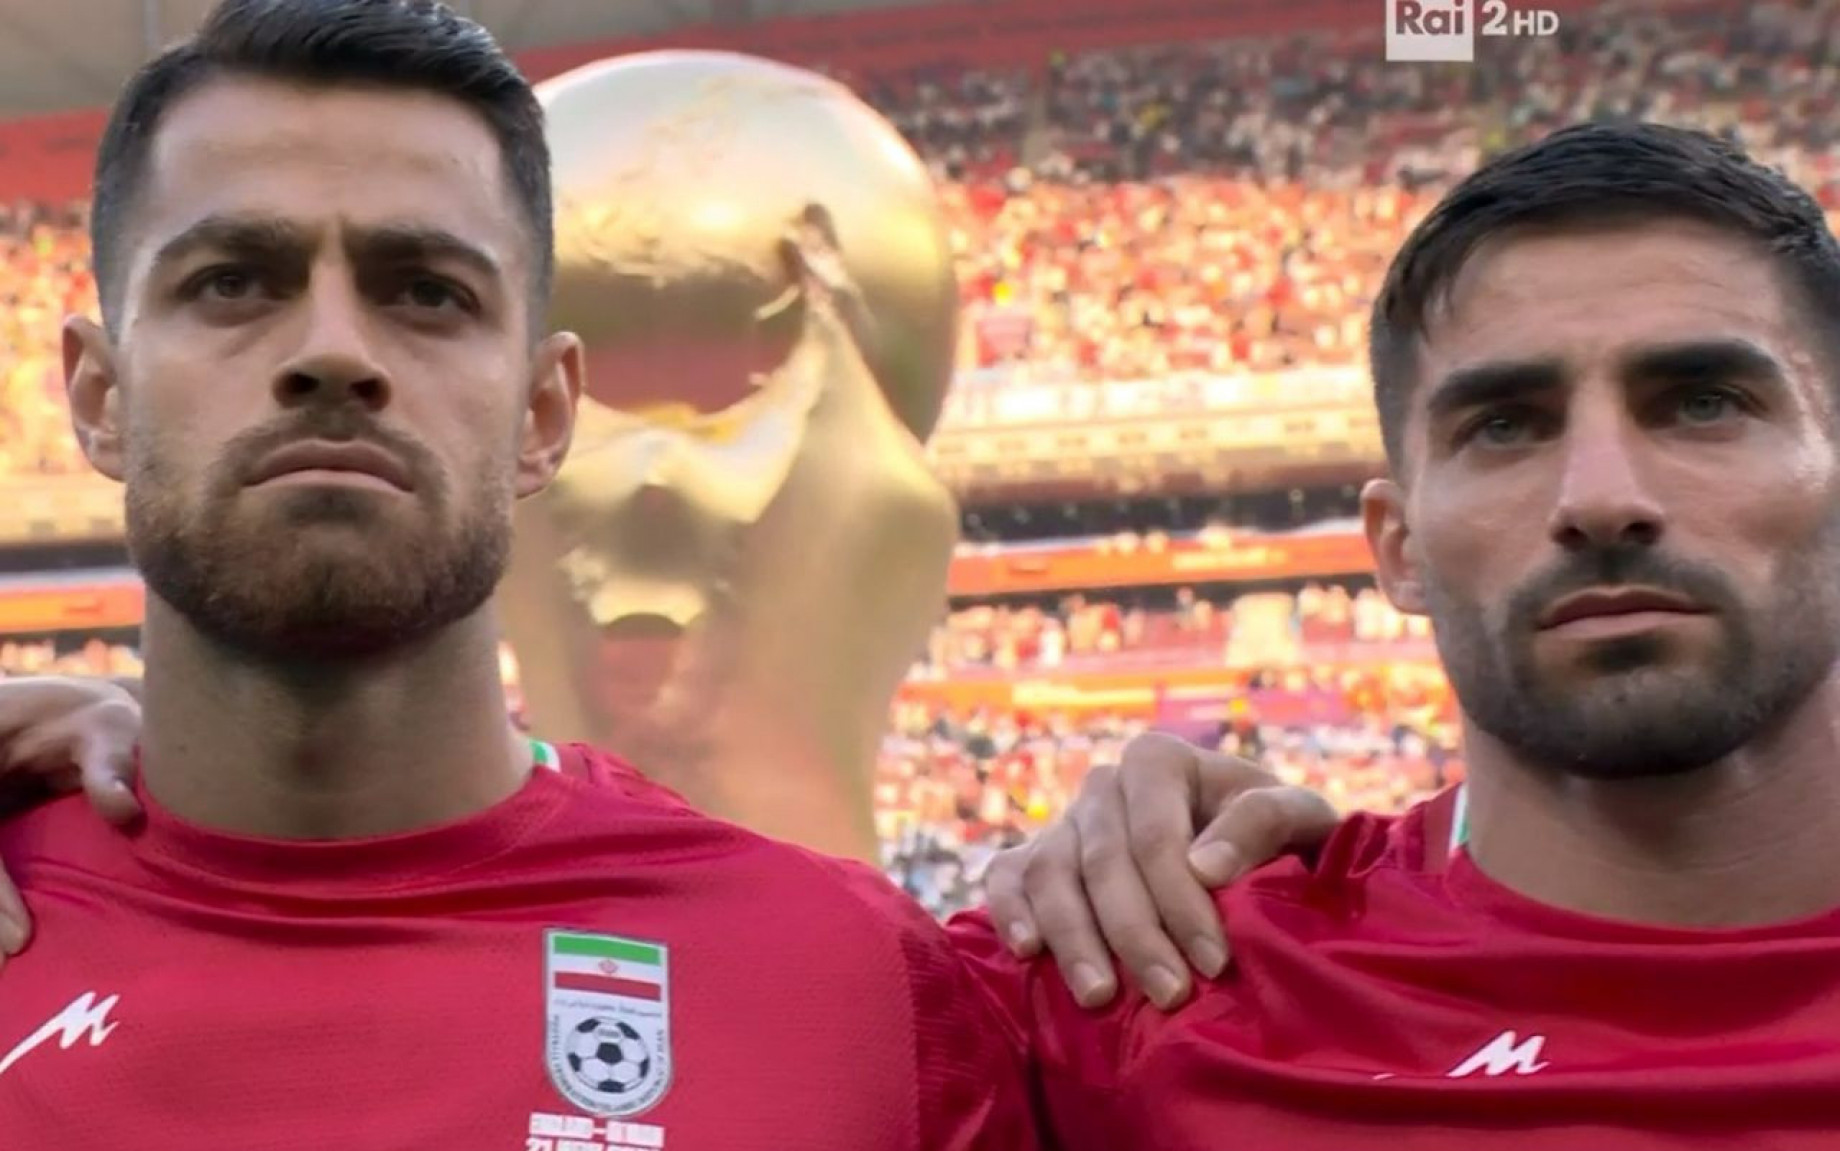 Mondiali, l'Iran non canta l'inno contro l'Inghilterra: la protesta dei calciatori contro il regime